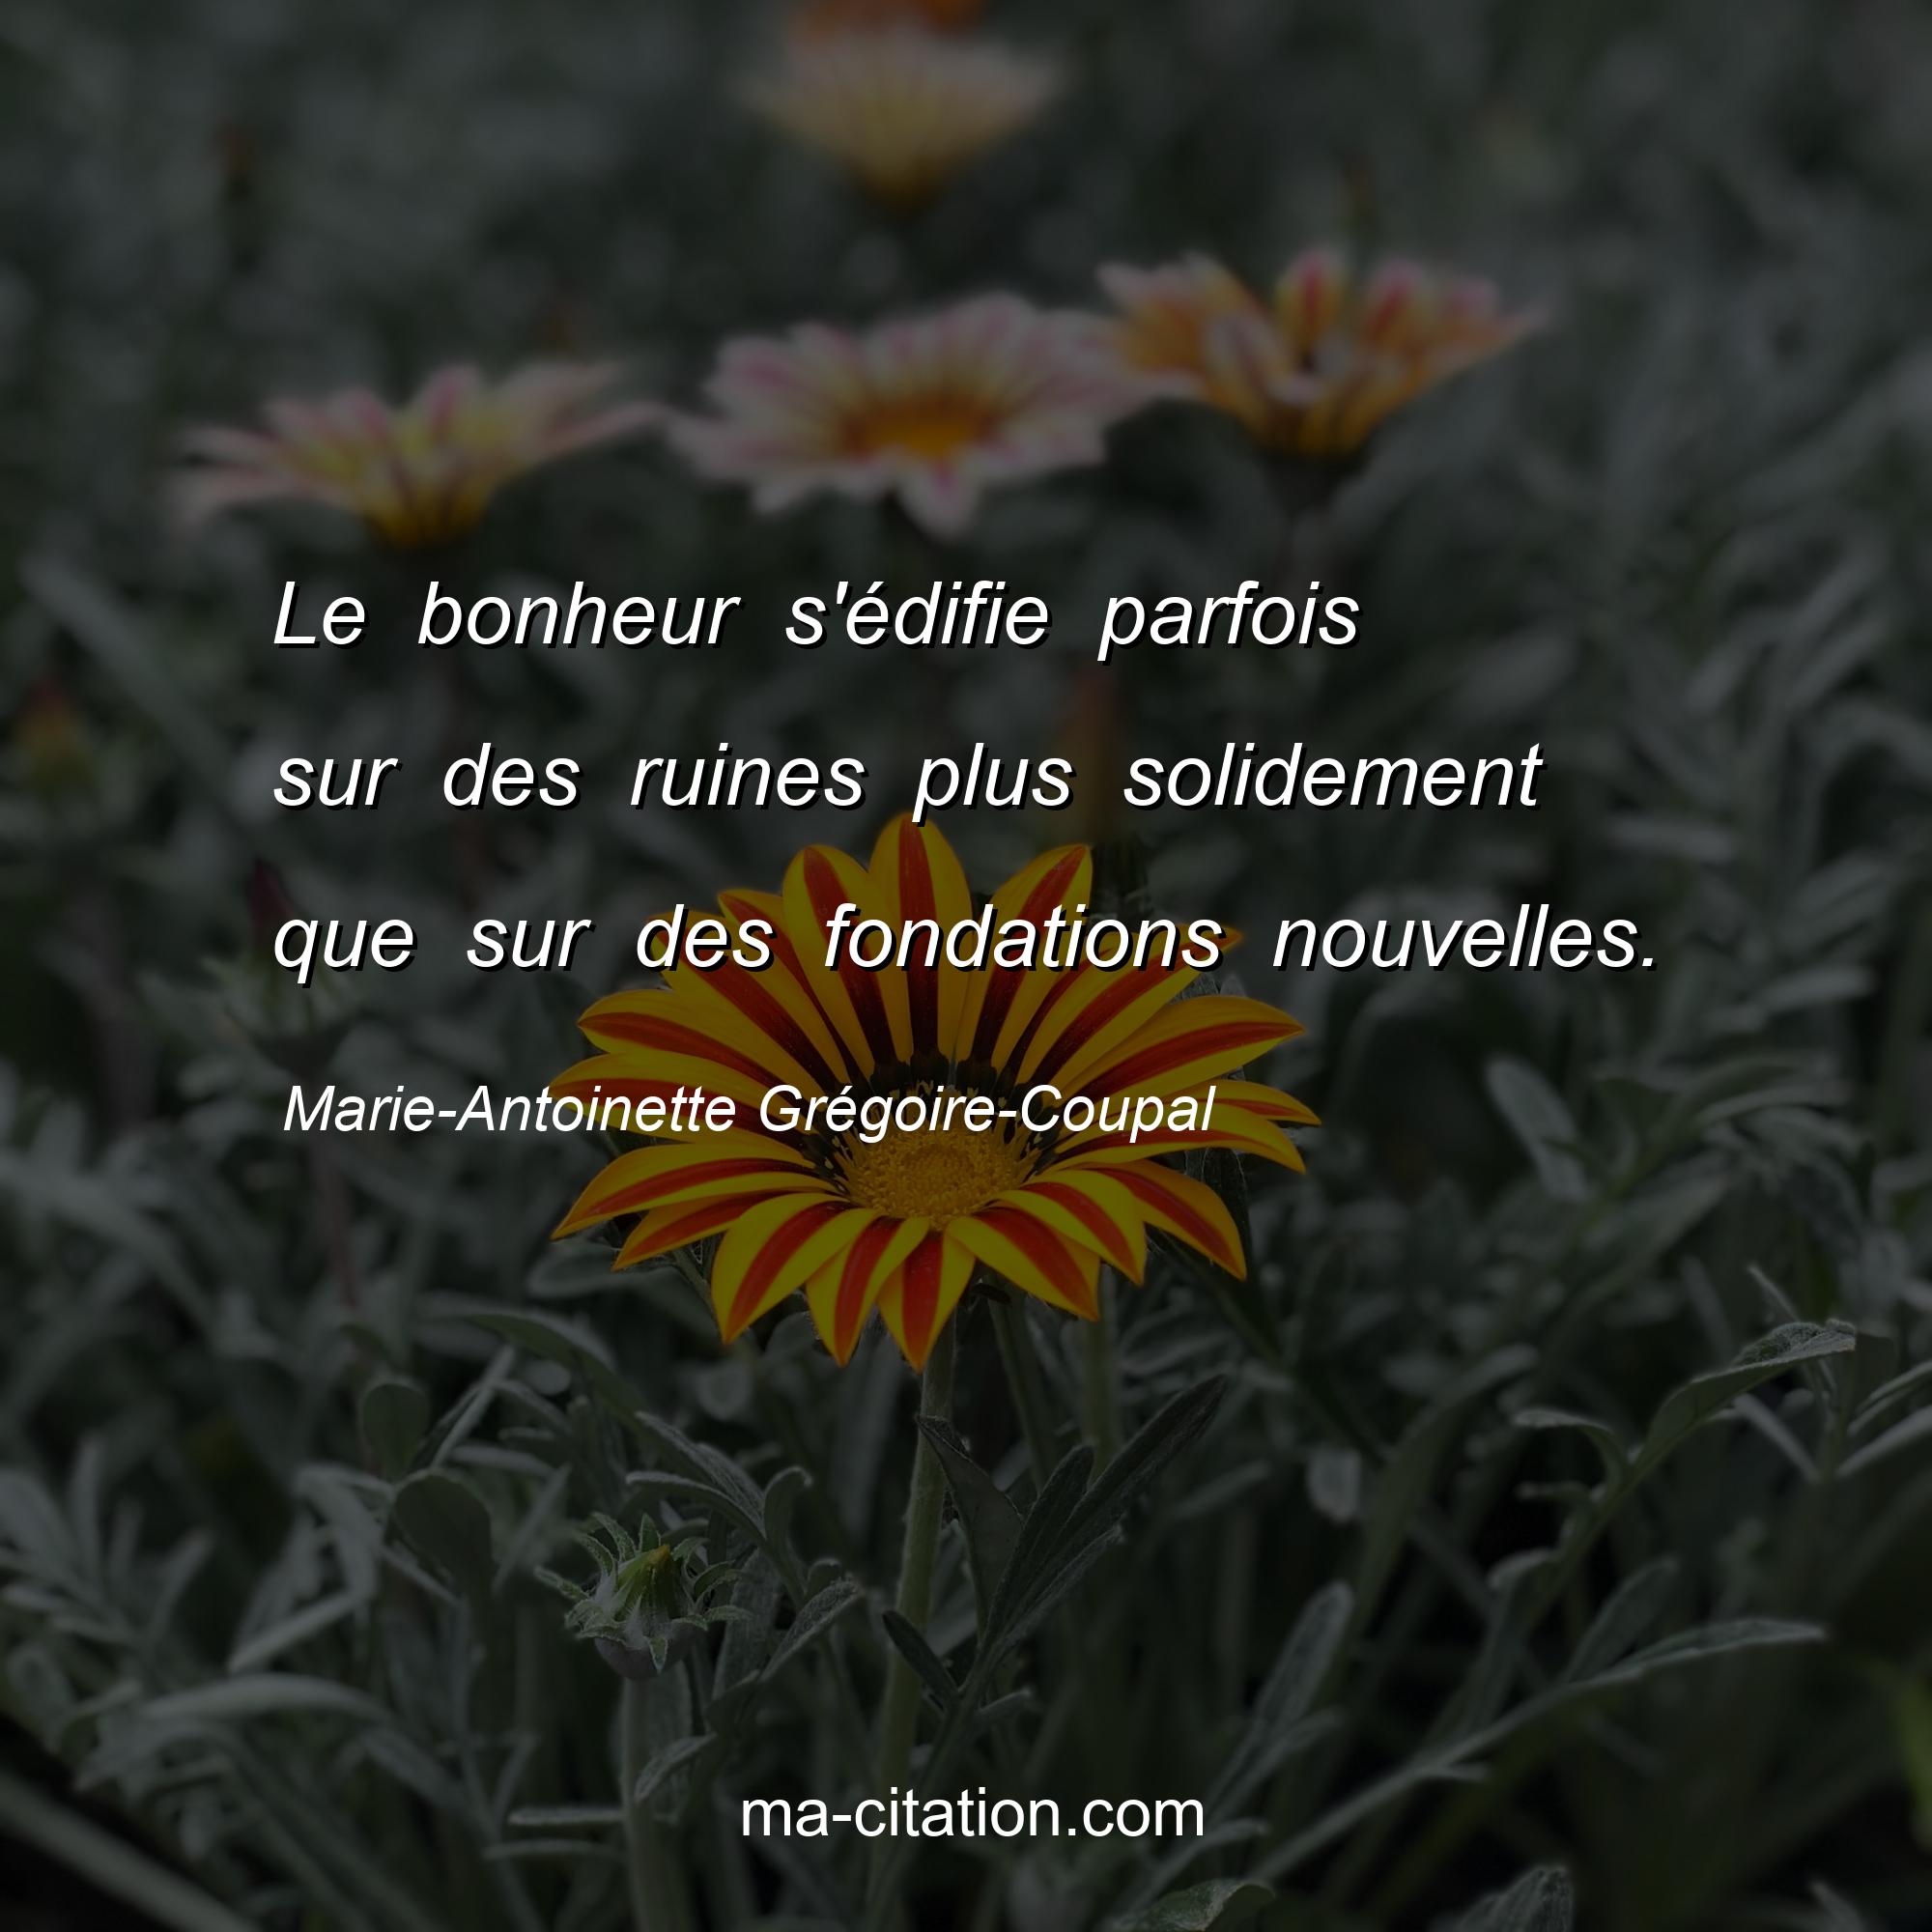 Marie-Antoinette Grégoire-Coupal : Le bonheur s'édifie parfois sur des ruines plus solidement que sur des fondations nouvelles.